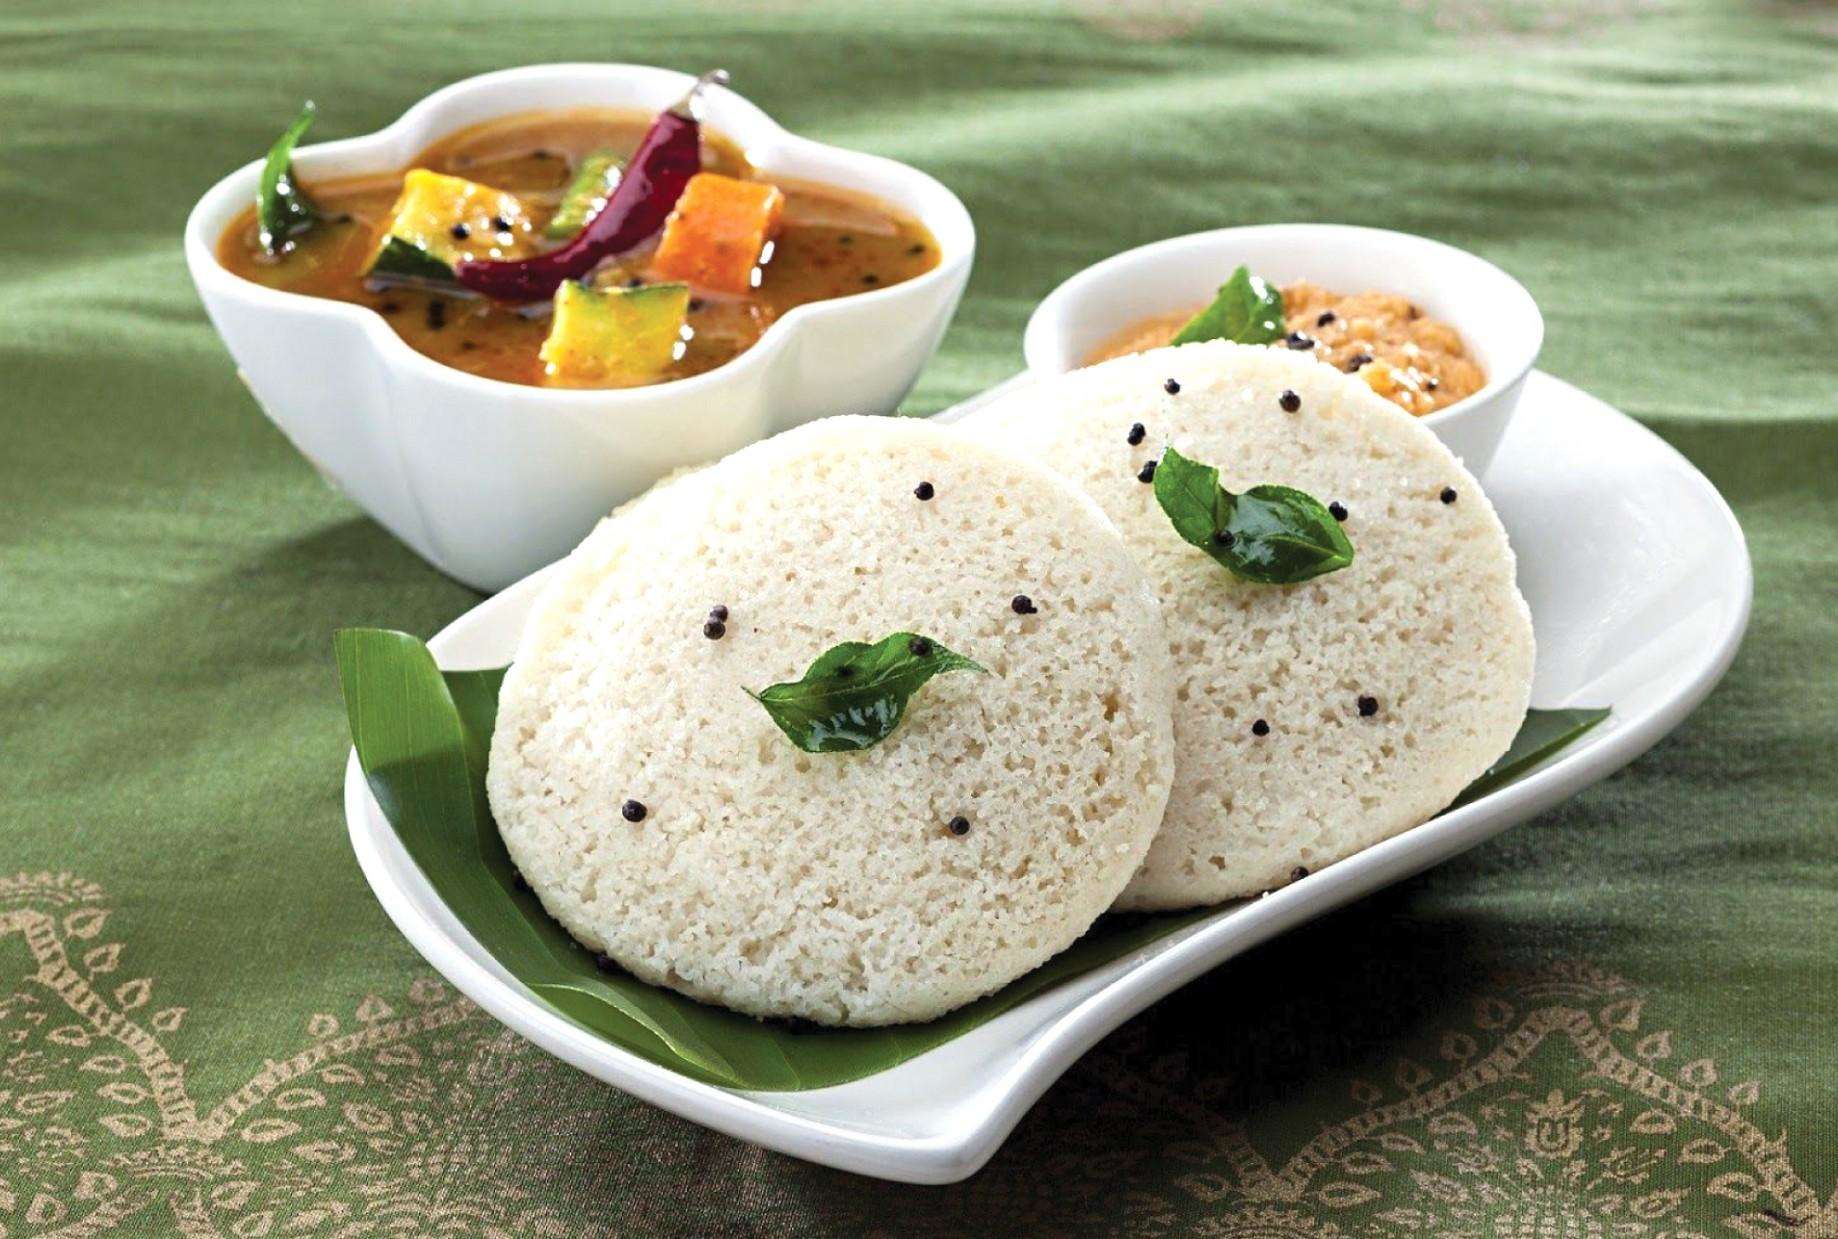 सर्वश्रेष्ठ नाश्ते में दक्षिण भारतीय व्यंजन पनीर उत्तपम बनाए,रेसिपी